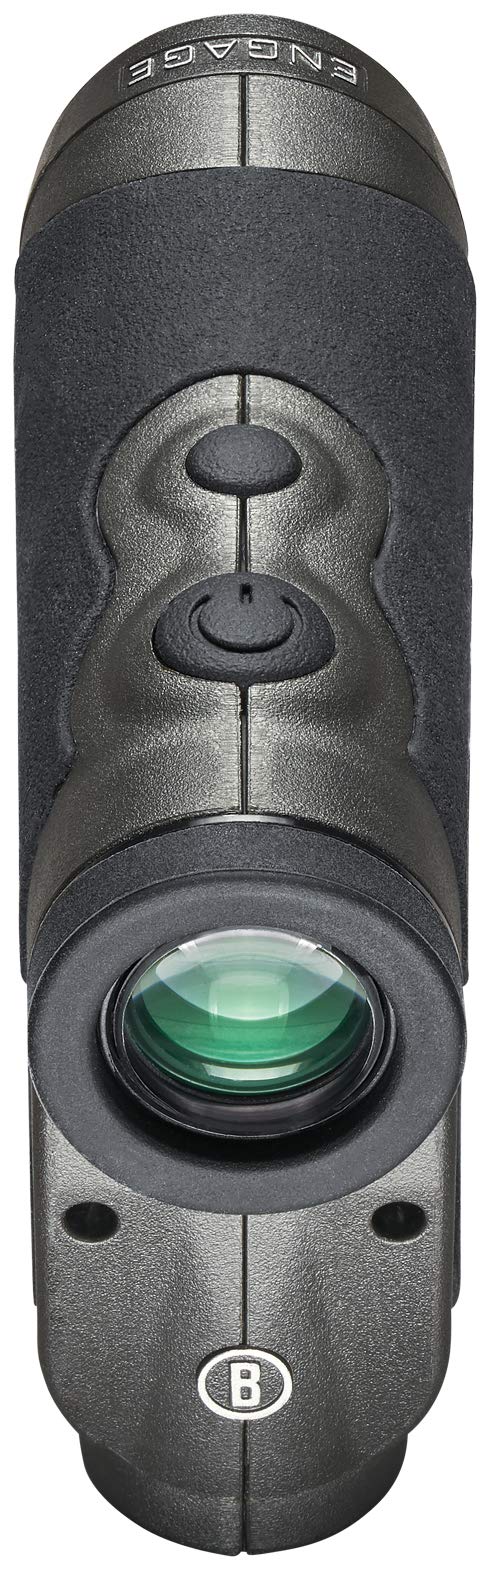 Bushnell Engage Hunting Laser Rangefinder (7848222785774)